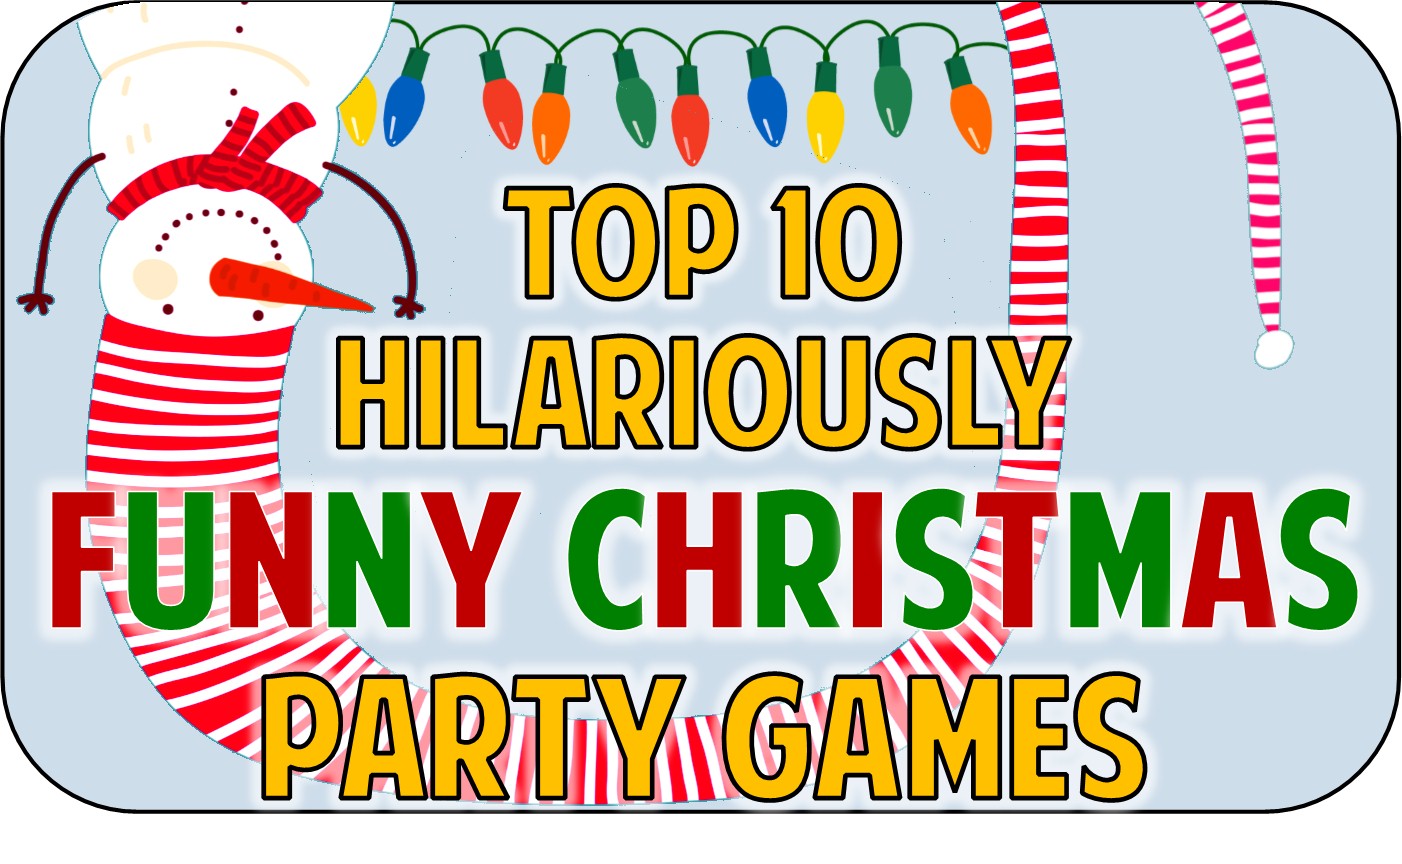 Christmas Riddles Christmas Games Family Christmas Games 